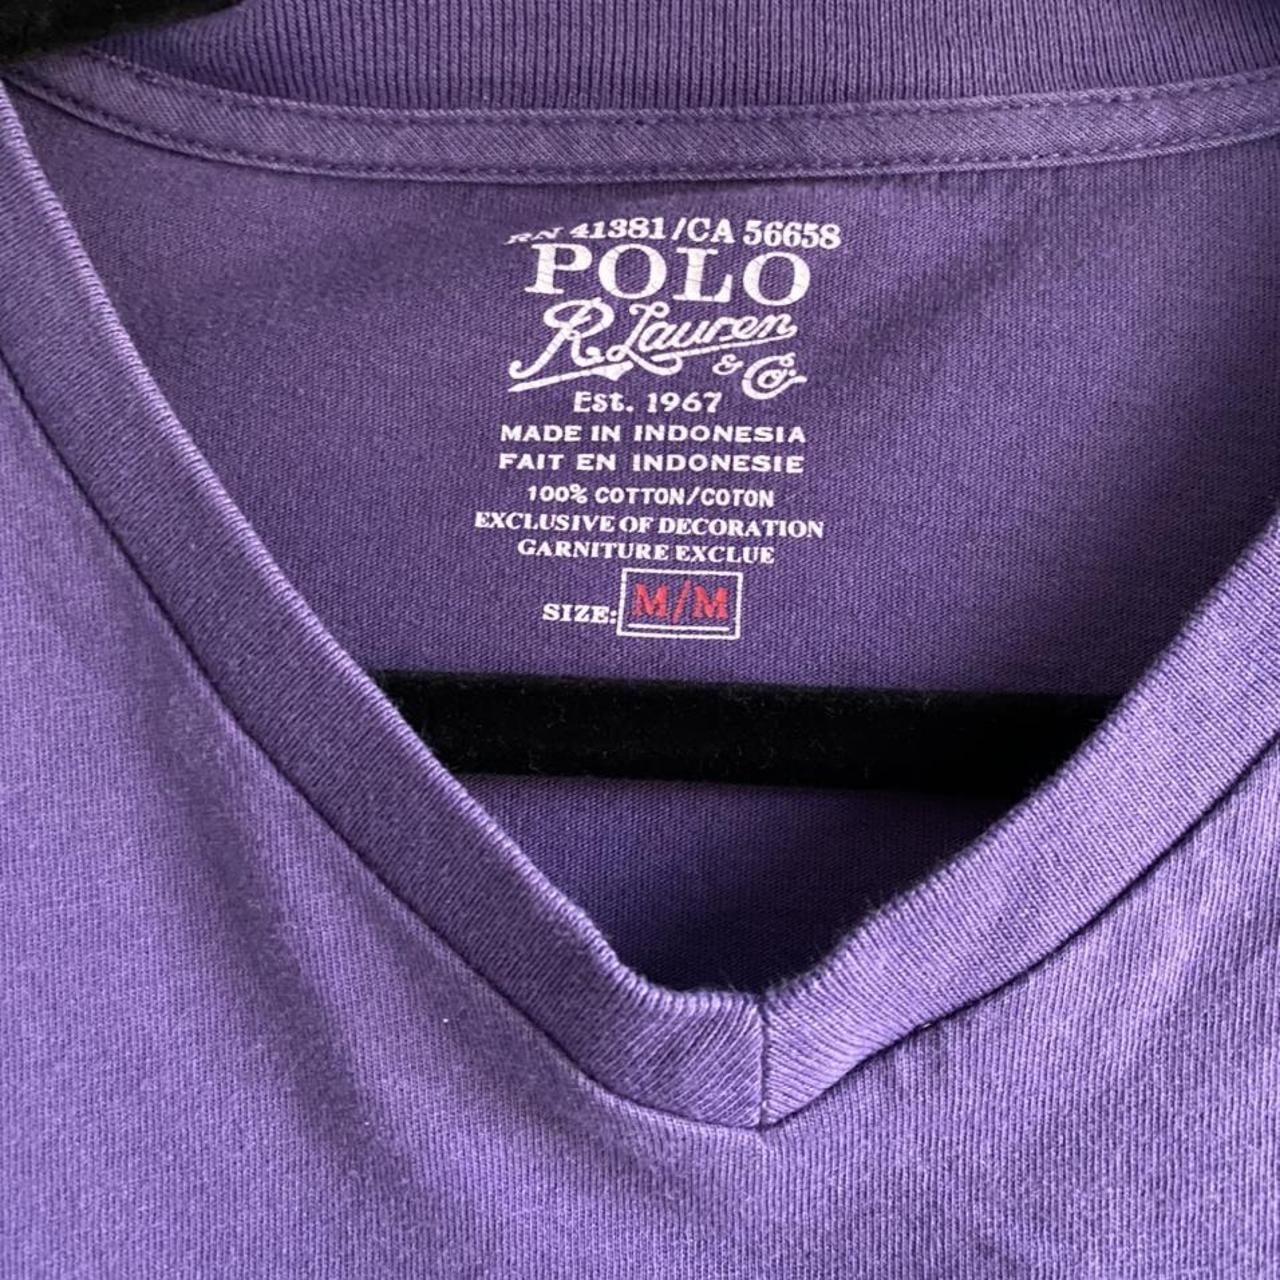 Vintage Ralph Lauren Polo Shirt Size Medium Never... - Depop